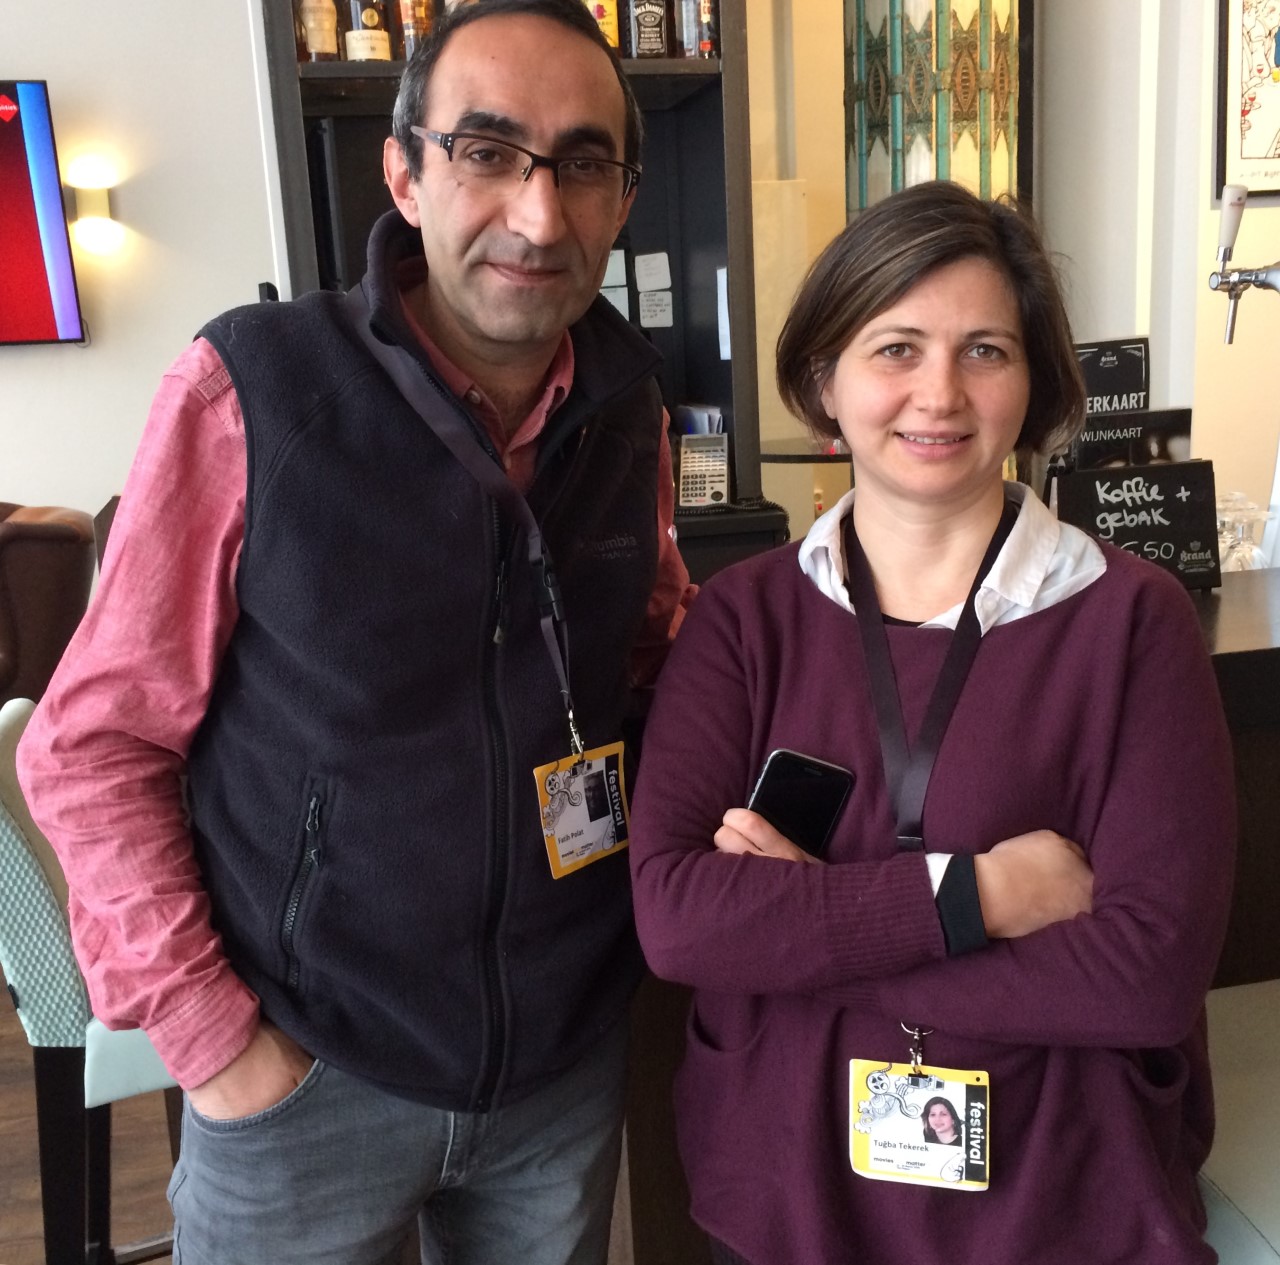 Polat en Tekerek over persvrijheid in Turkije: ‘Natuurlijk is ons werk nu moeilijker’